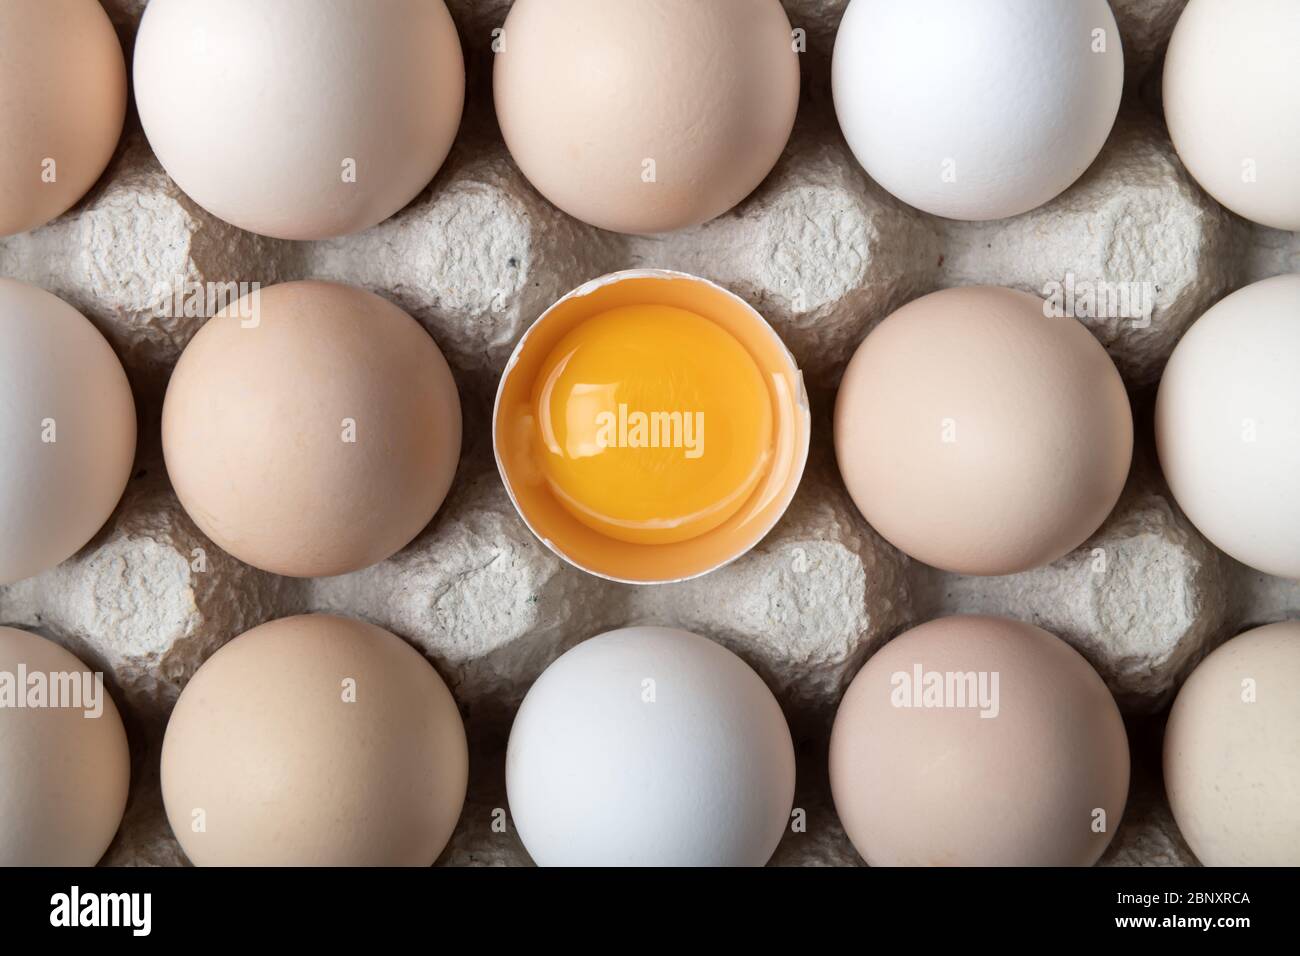 Hühnereier in Bio-Verpackung Nahaufnahme. Ei halb gebrochen unter anderen Eiern. Food-Fotografie Stockfoto